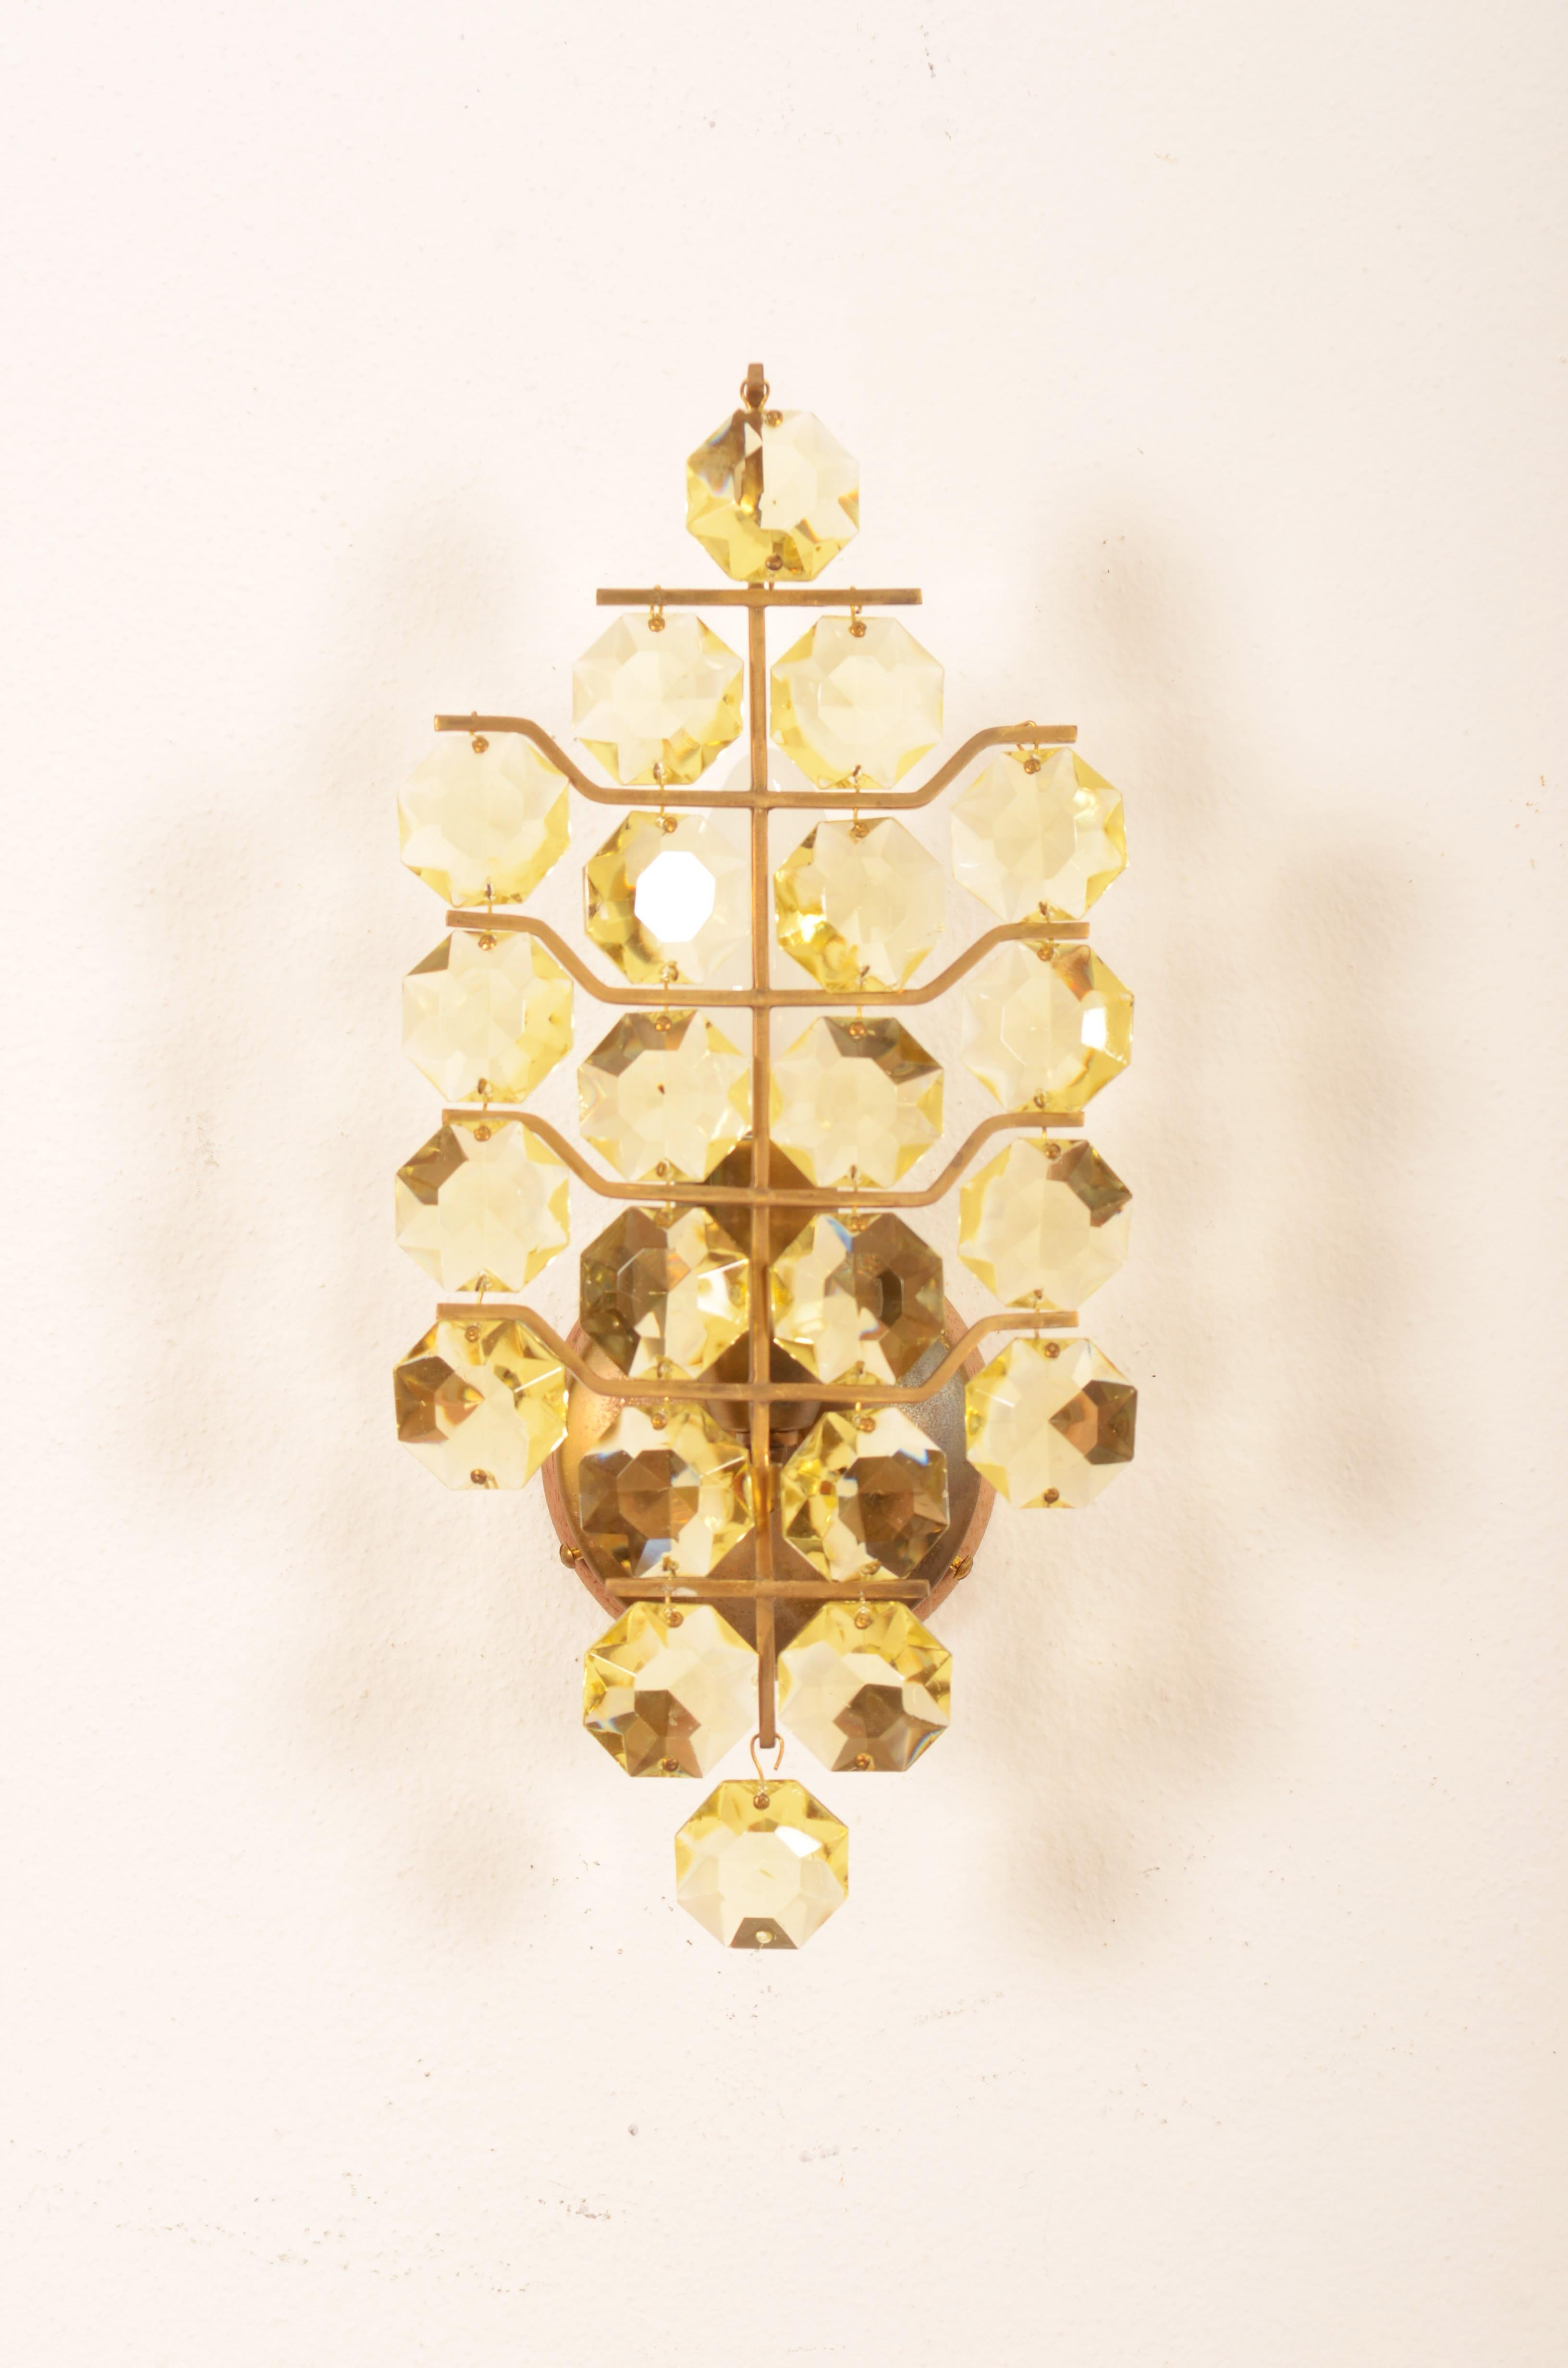 Cadre en laiton avec cristaux octogonaux jaunes et équipé d'une douille E14. Fabriqué par Bakalowits dans les années 1960 à Vienne.
Ensemble de deux.